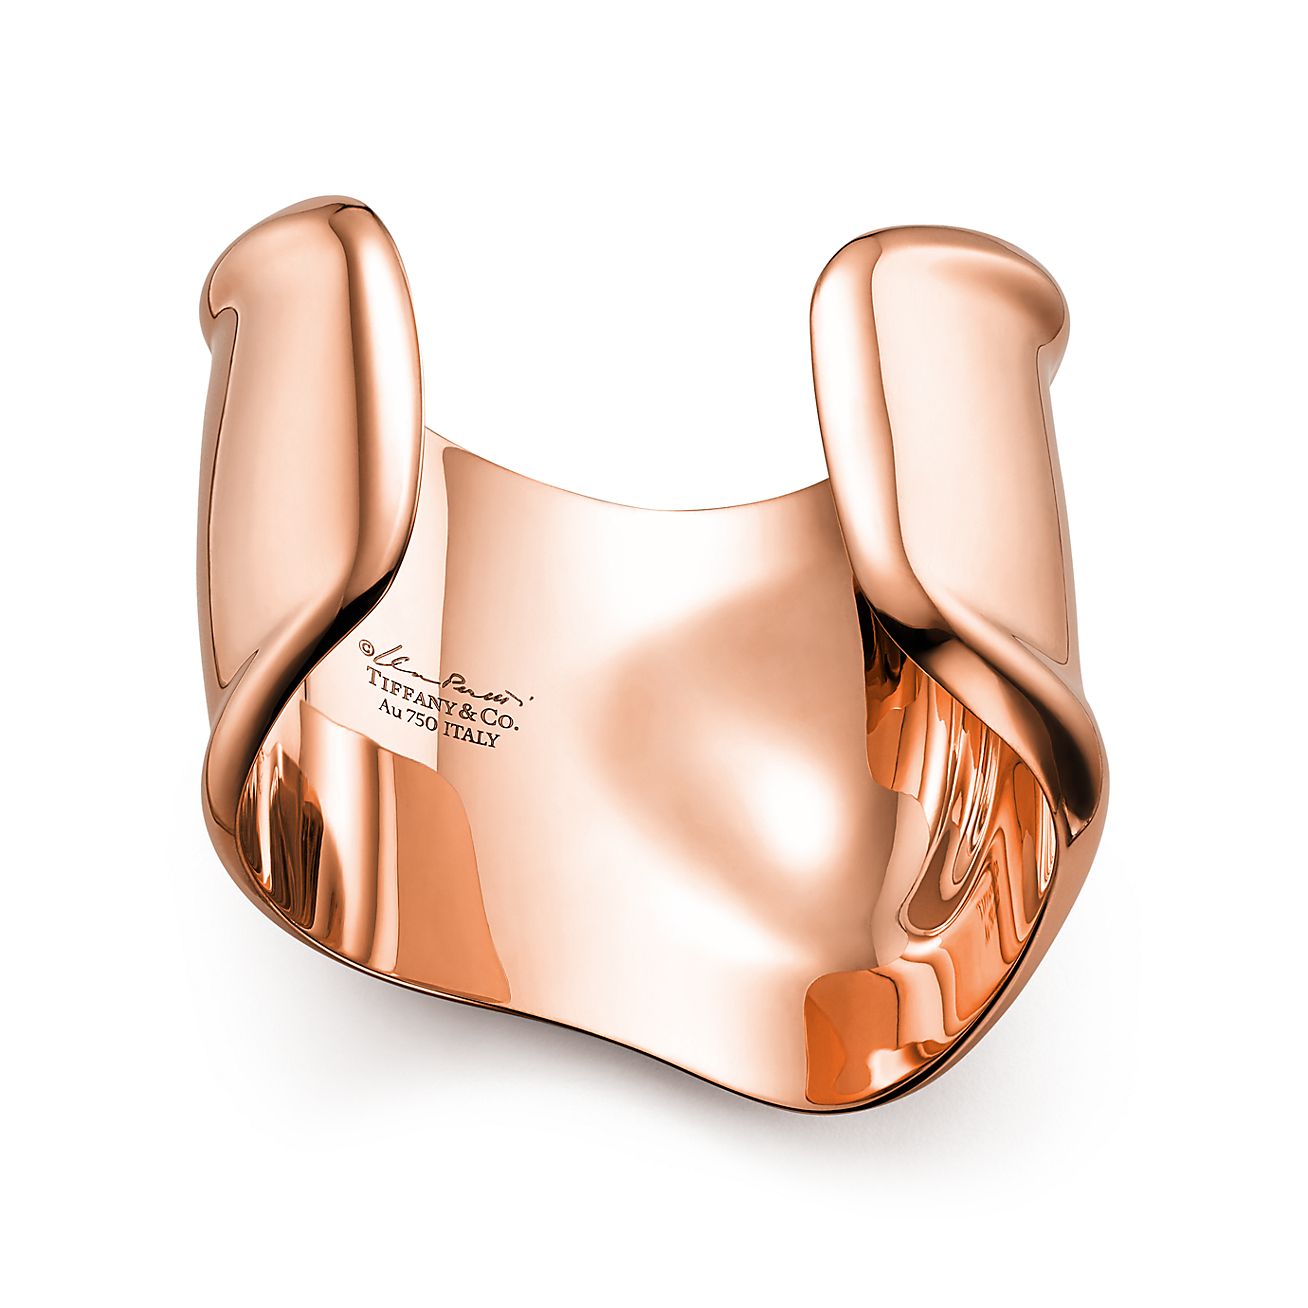 Elsa Peretti® medium Bone cuff in 18k rose gold, 61 mm wide